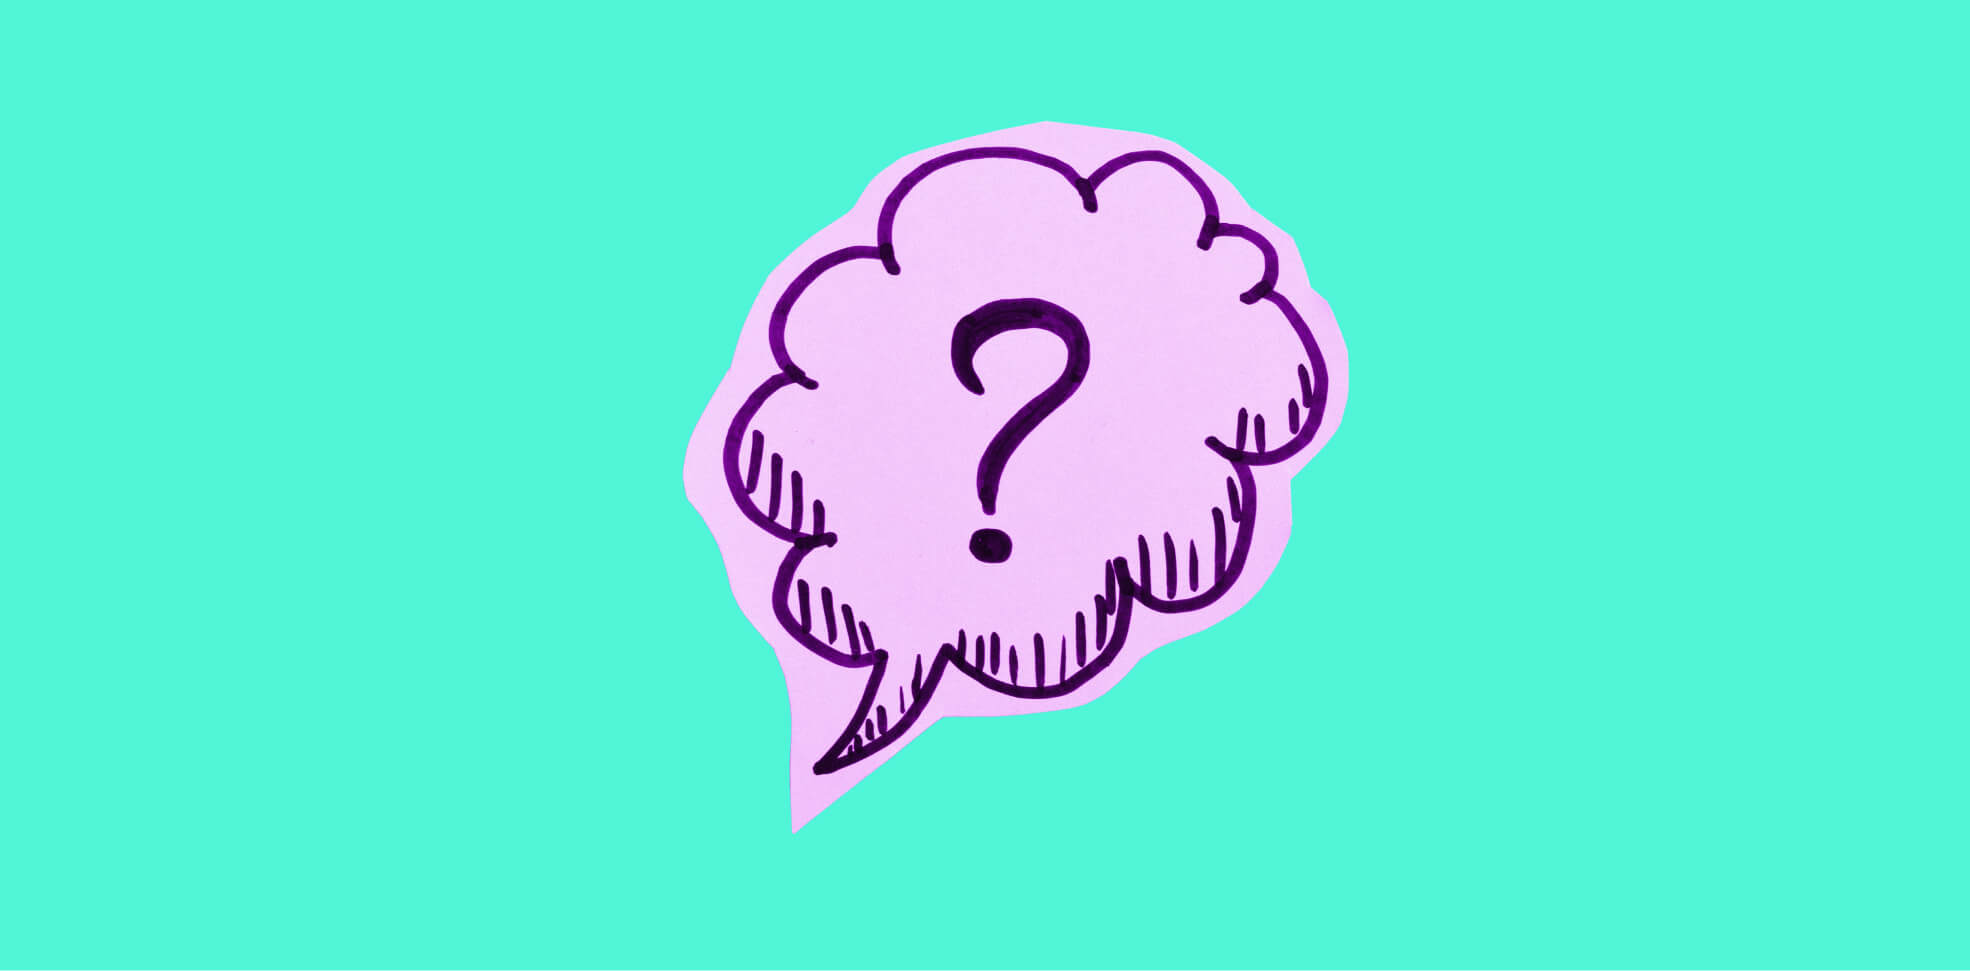 a question mark in a speech cloud